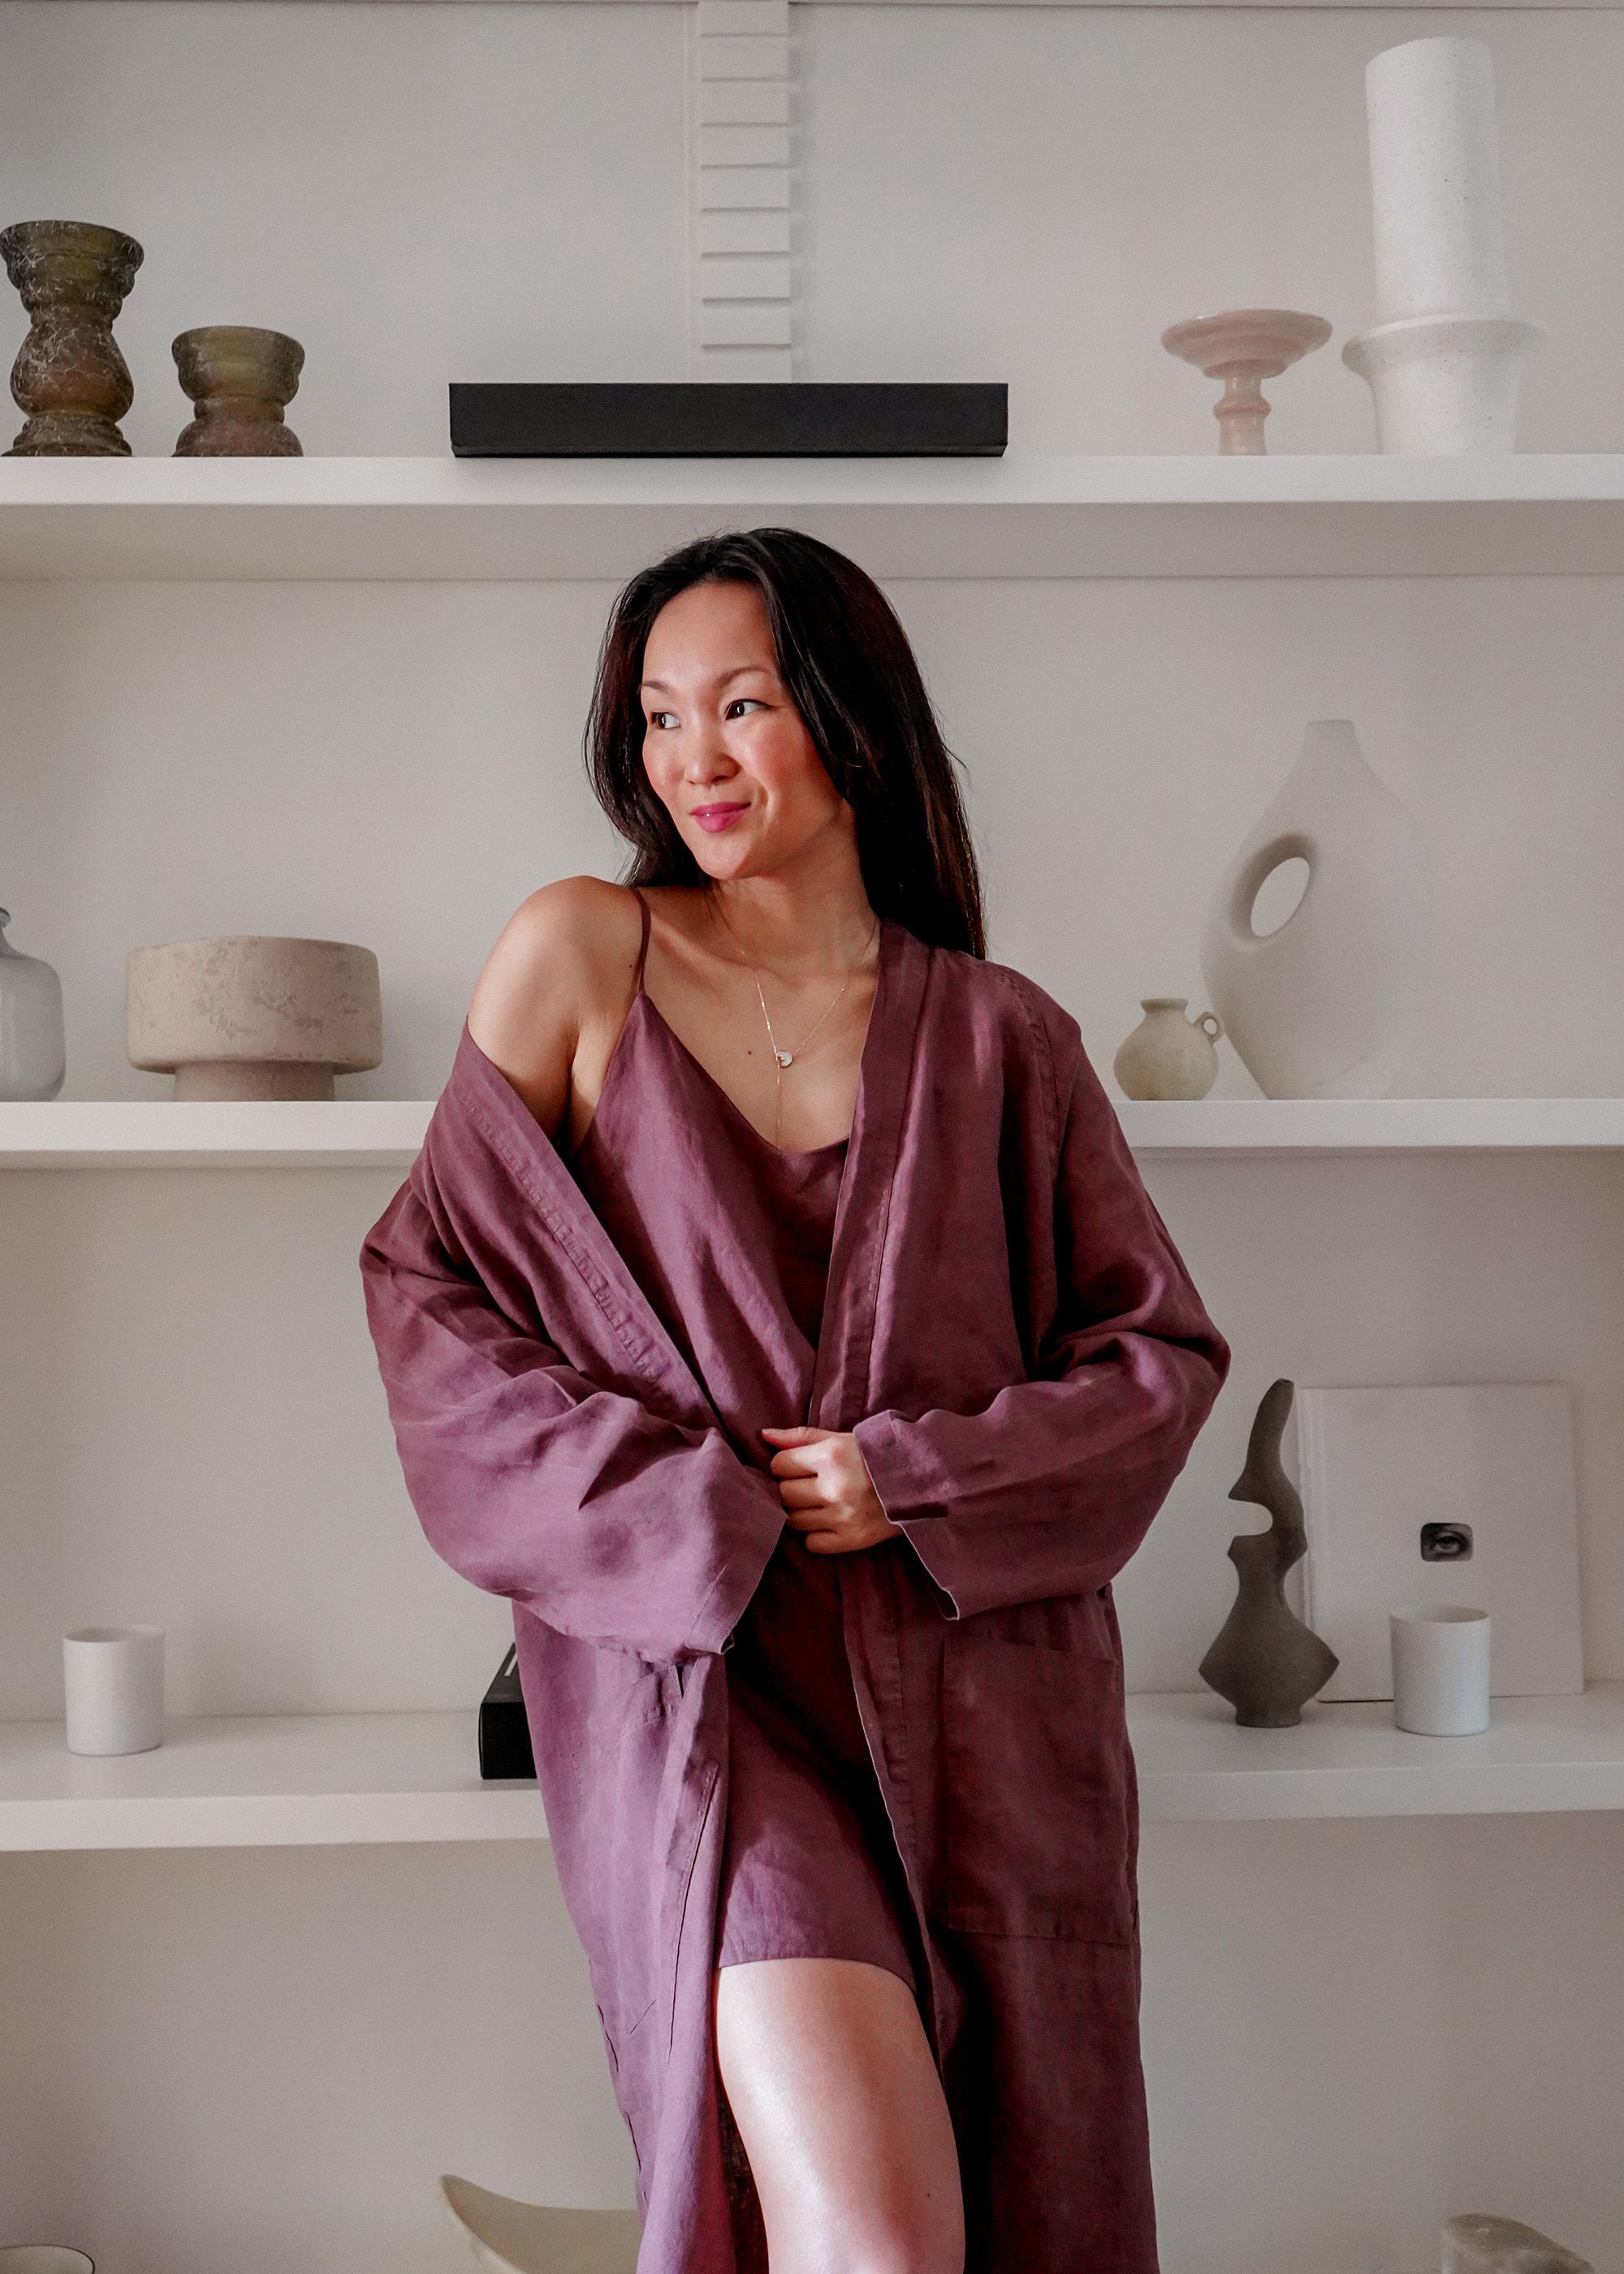 10 Ways To Wear A Kimono - Classy Yet Trendy